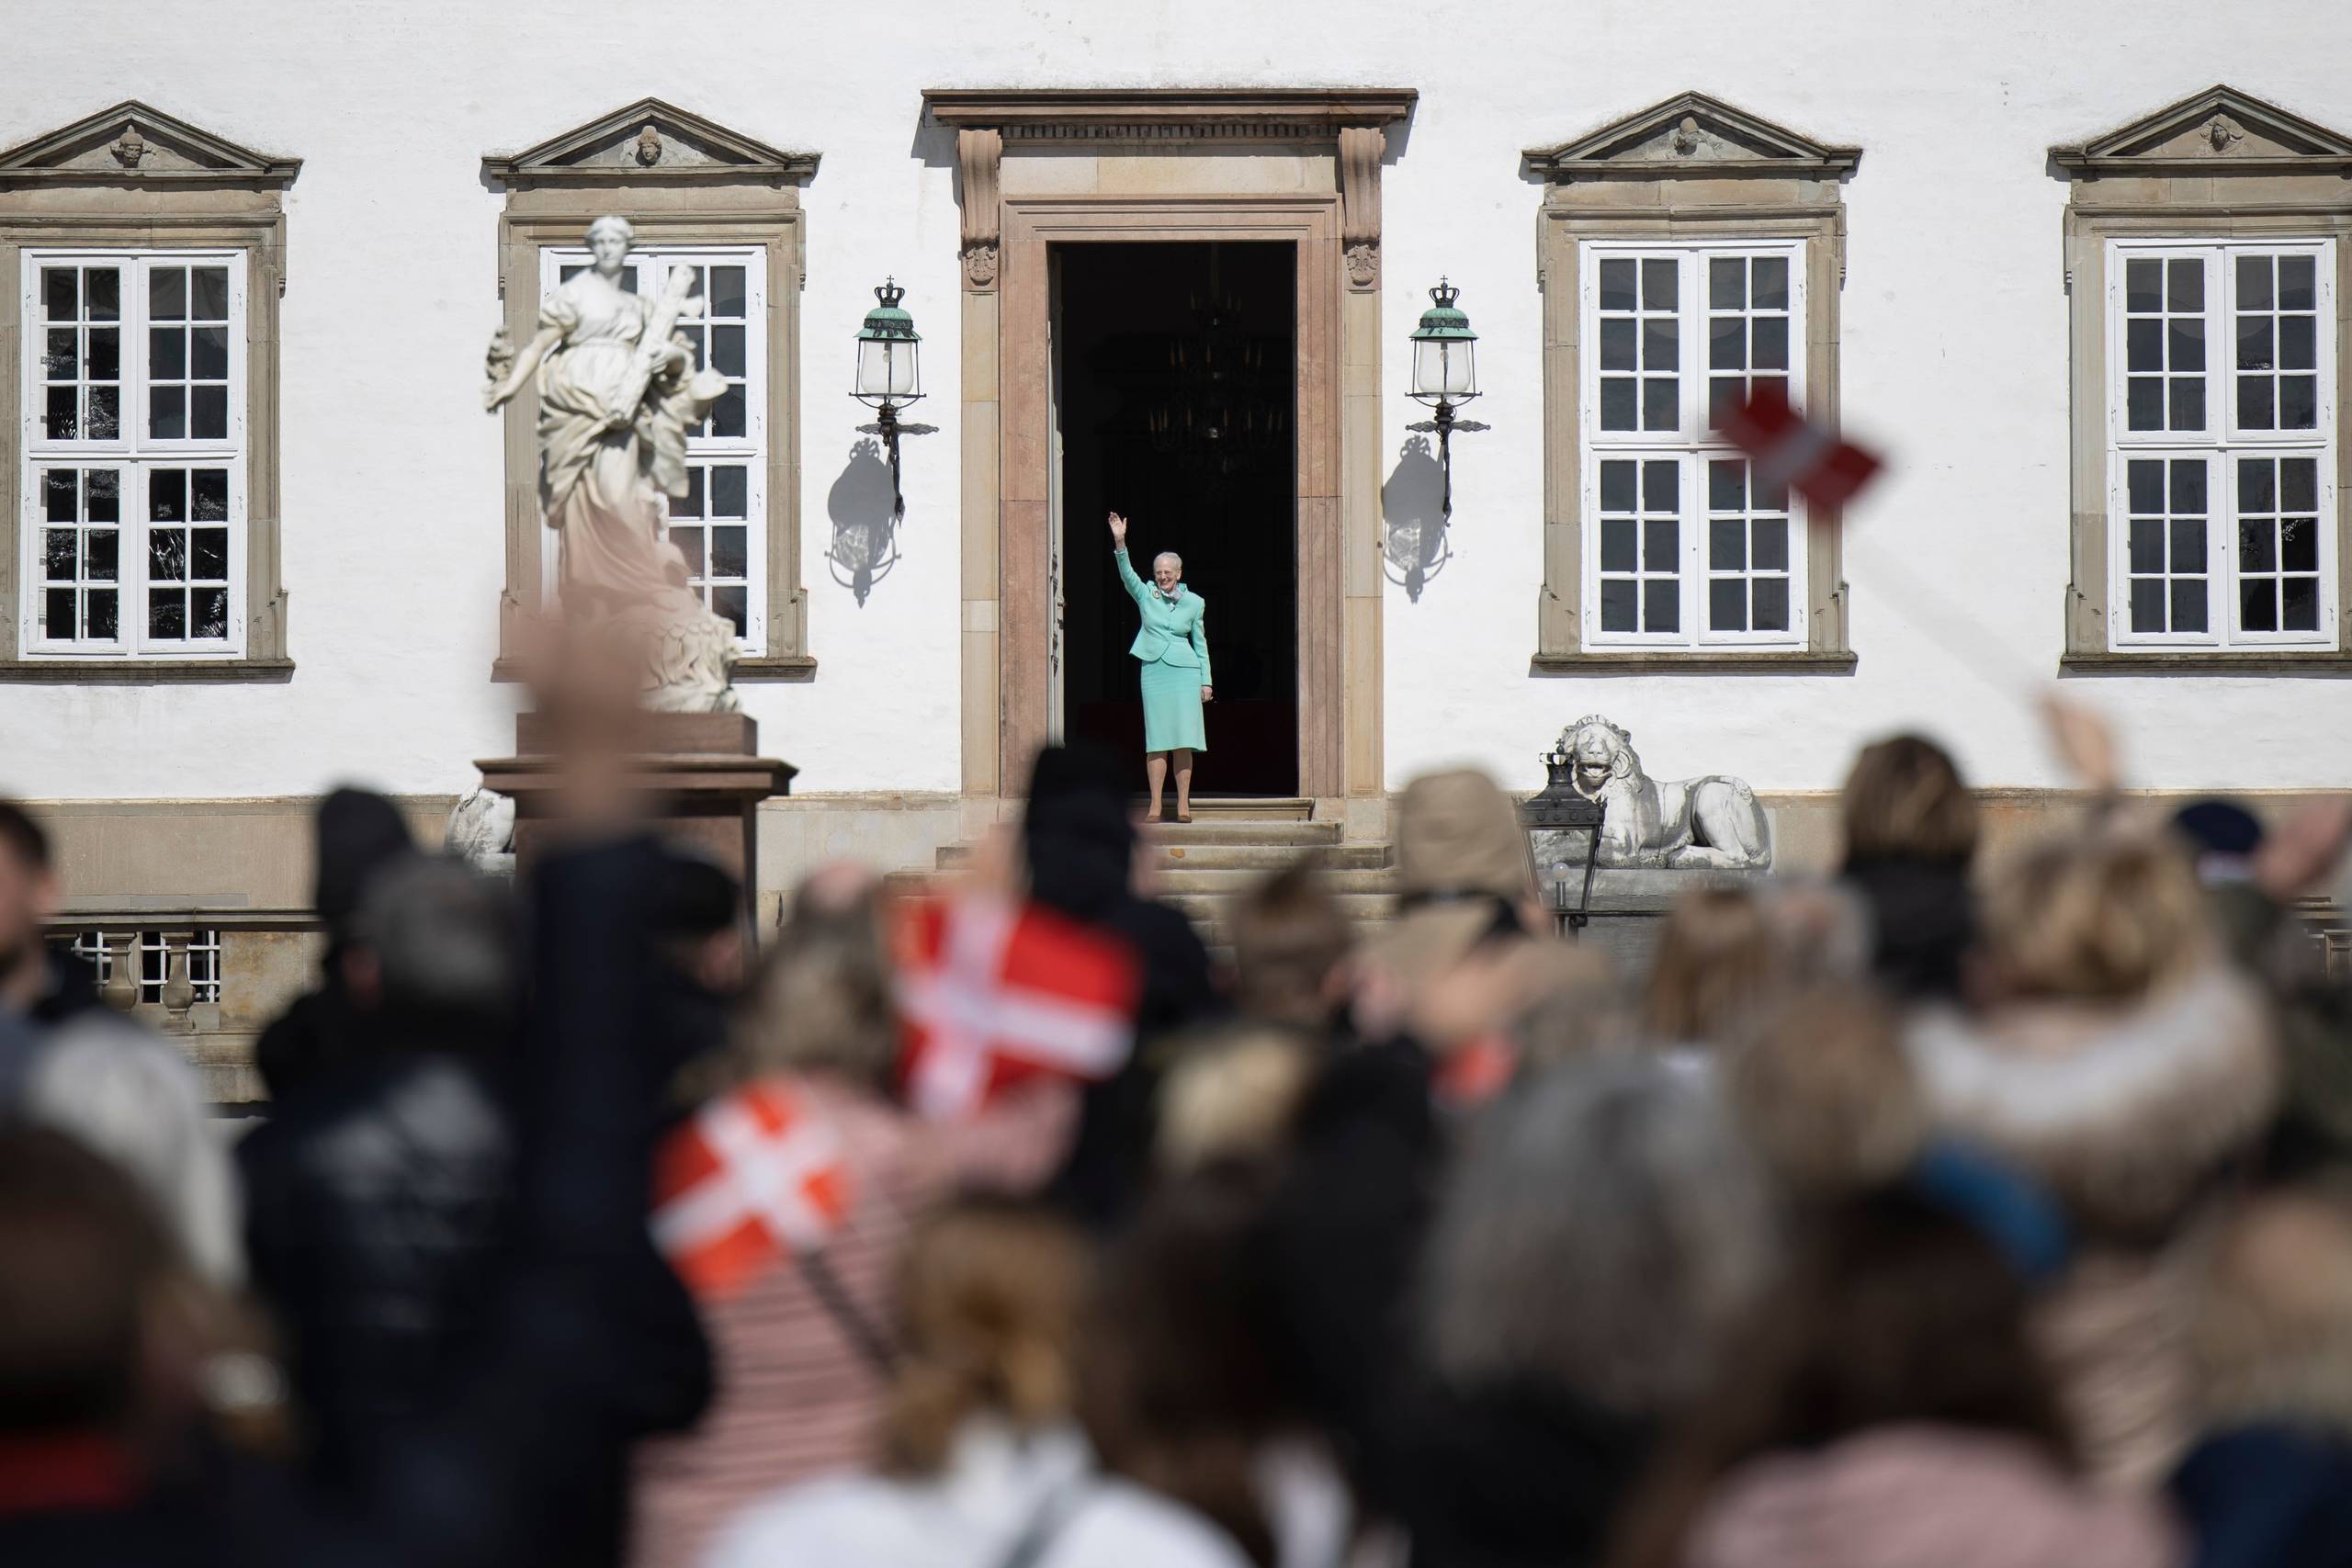 Da dronningen fyldte 80, blev hun også fejret på Fredensborg Slot - på afstand, da det var under coronaepidemien. I dag er hendes første fødselsdag, efter hun abdicerede. Arkivfoto: Andreas Merrald.